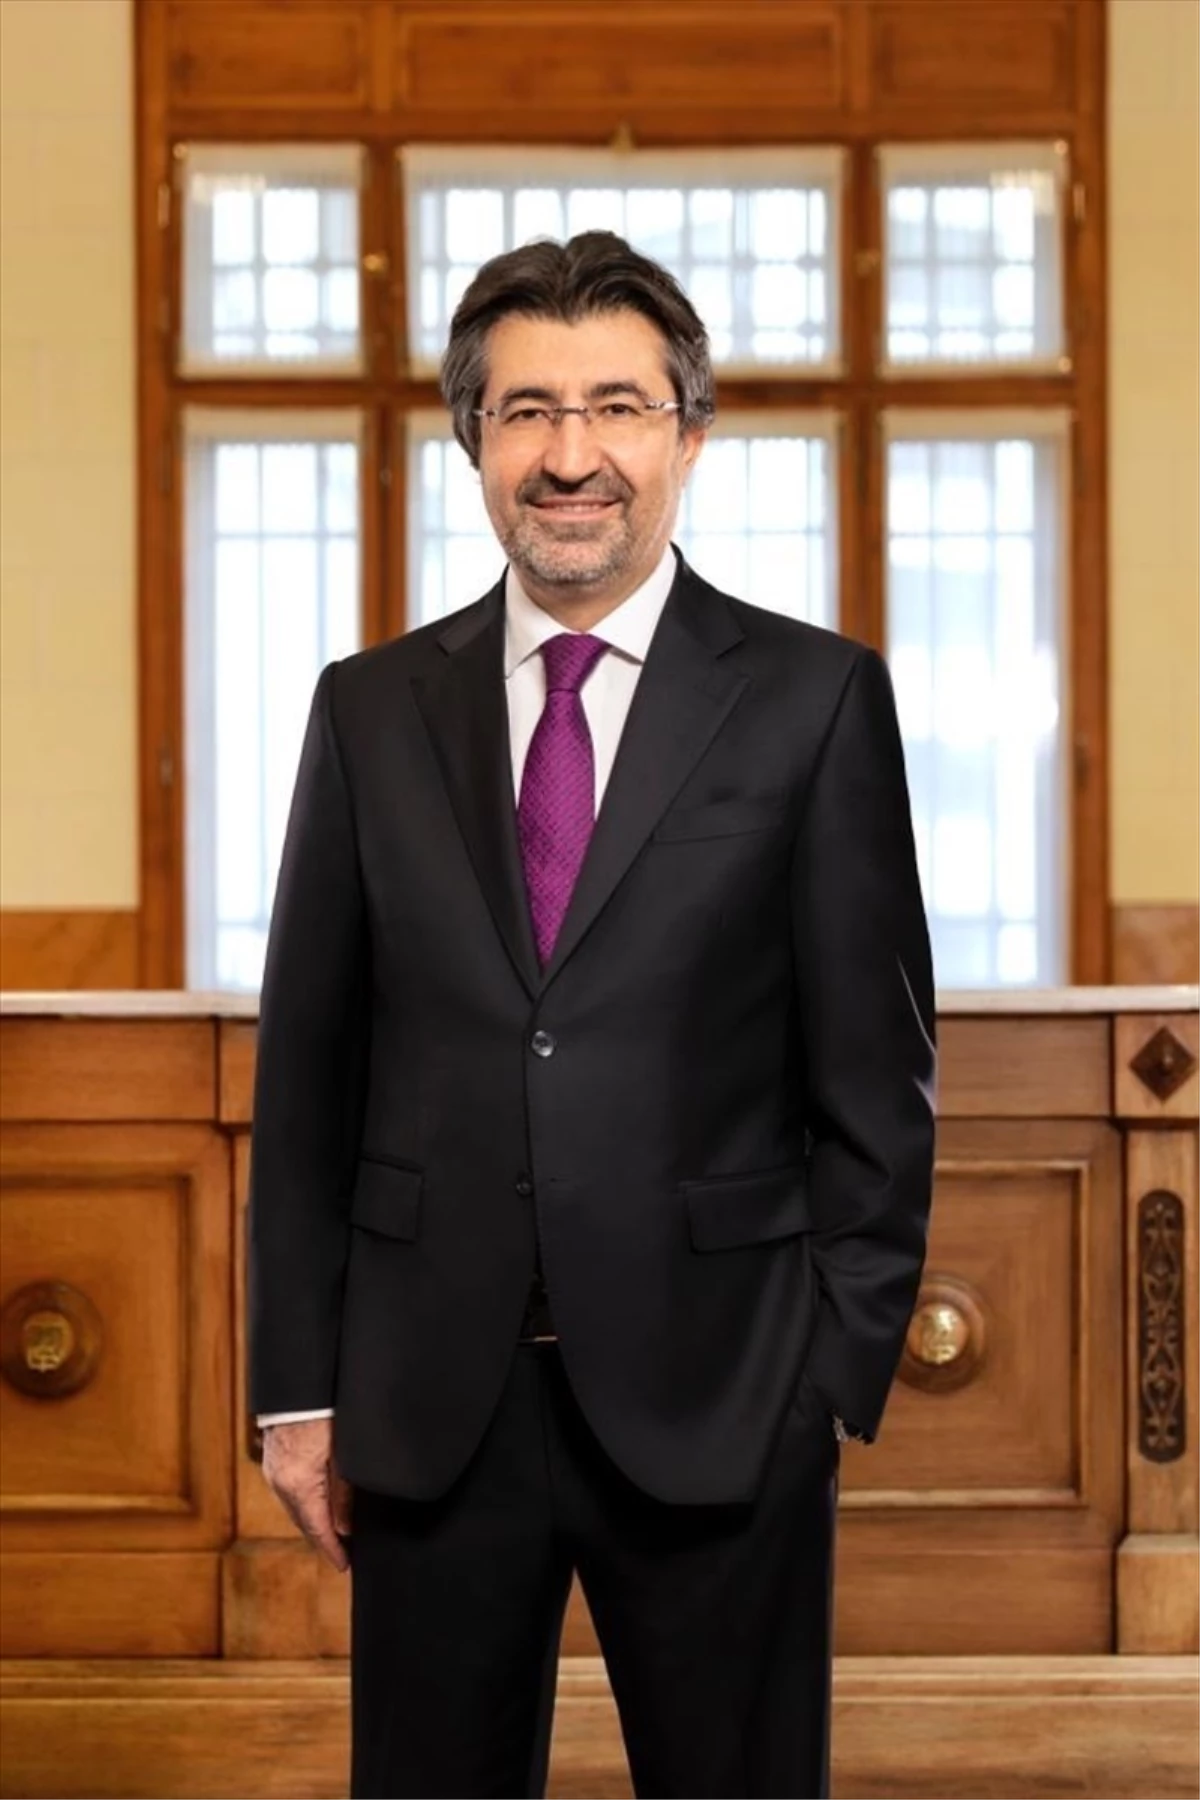 Türkiye Bankalar Birliği Başkanı Çakar, ekonomi ve bankacılık sektöründeki gelişmeleri değerlendirdi: (2)